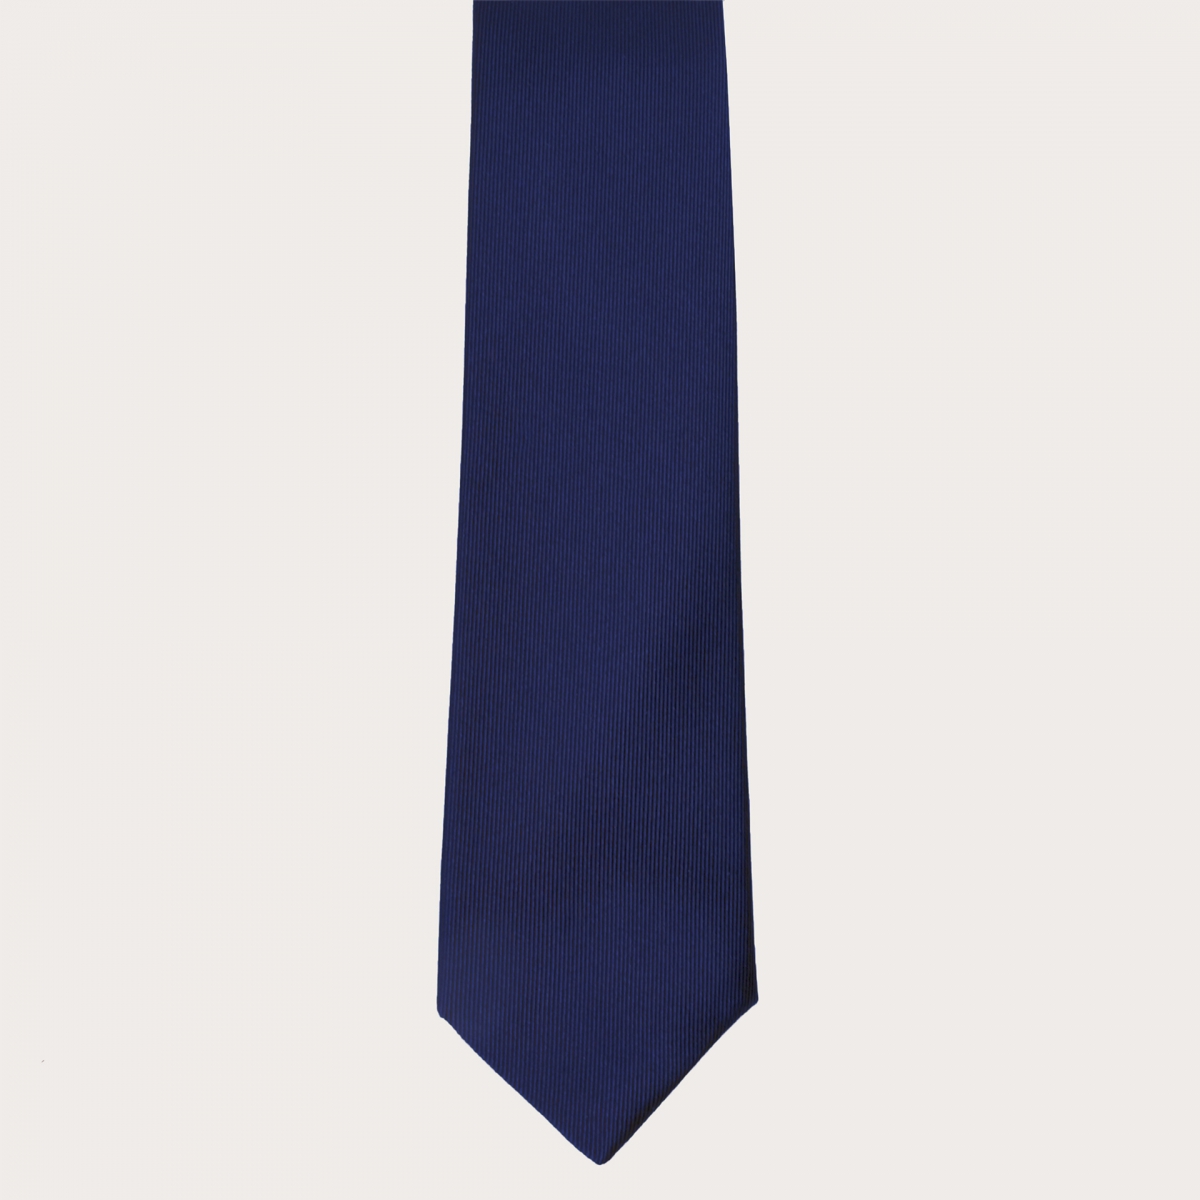 Cravate artisanale bleue en soie